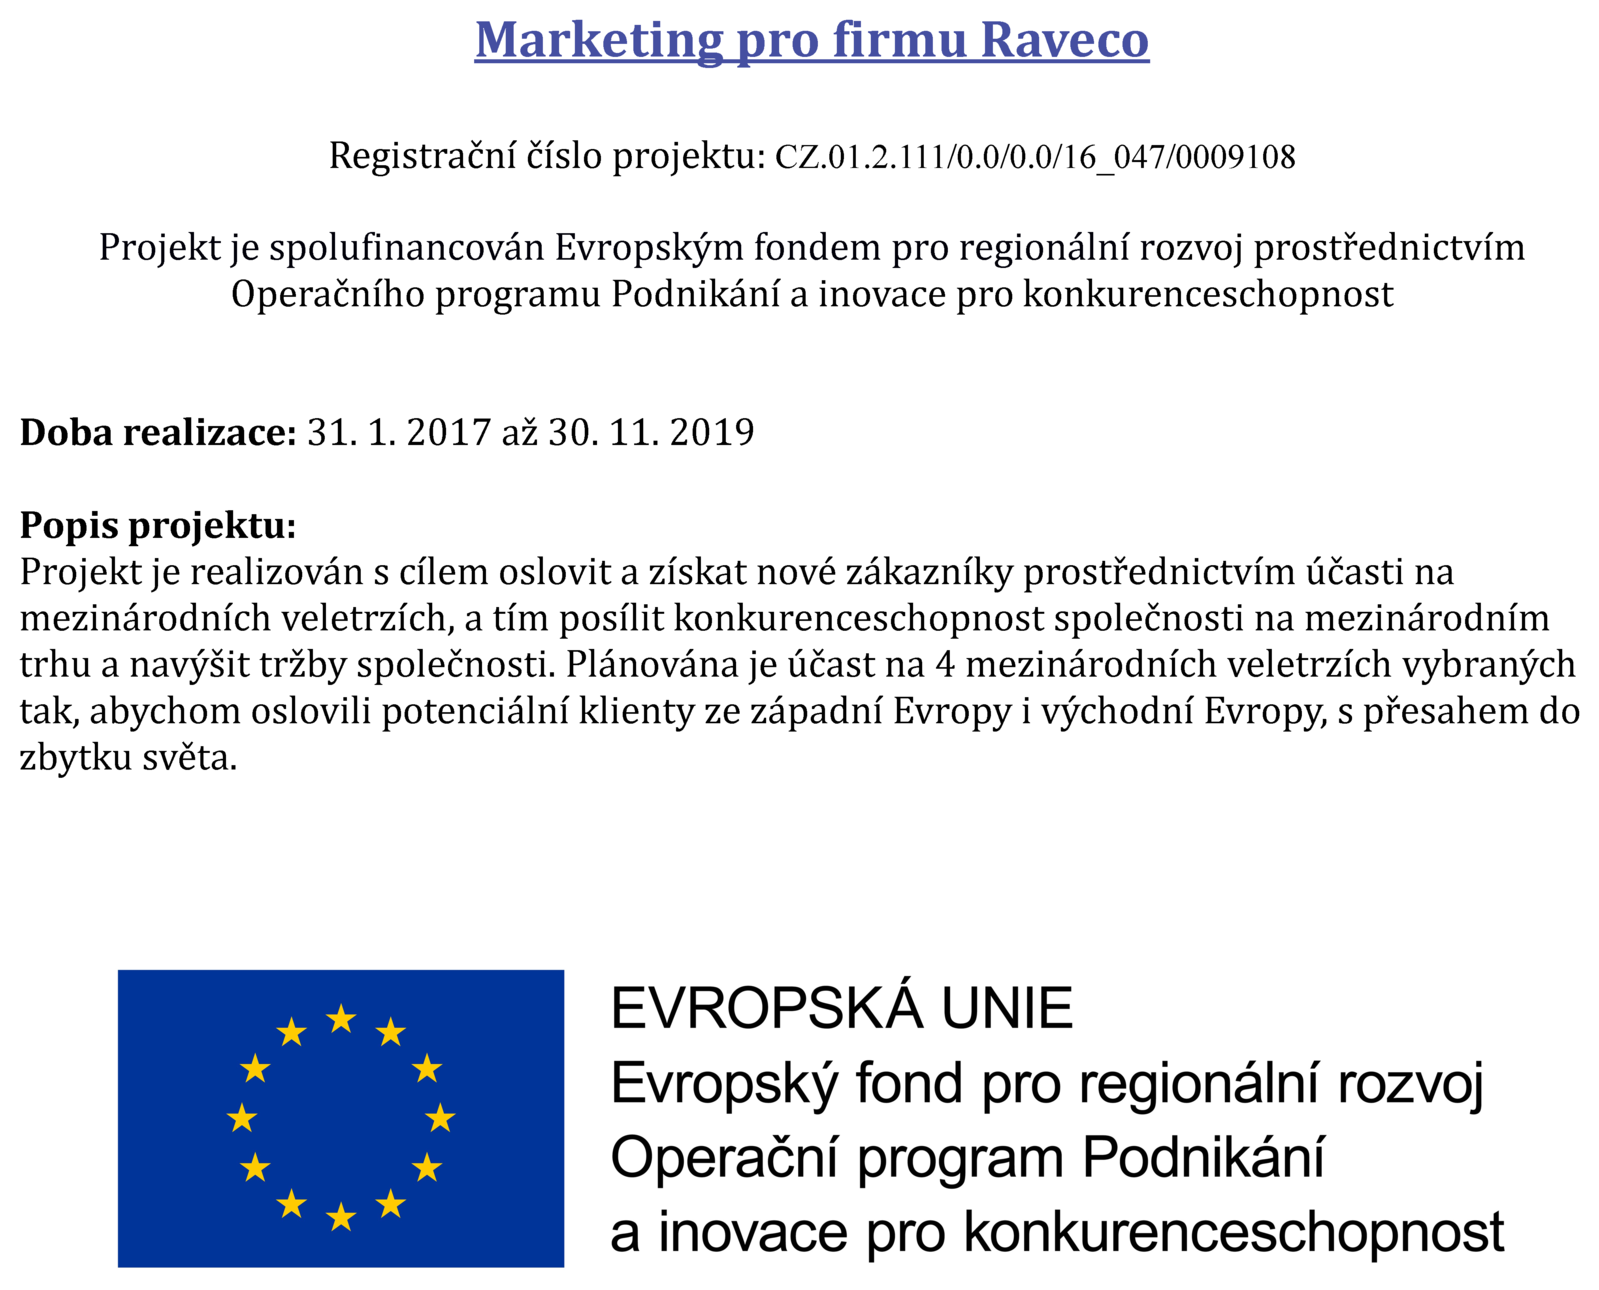 Informace na webu Raveco_návrh2.png